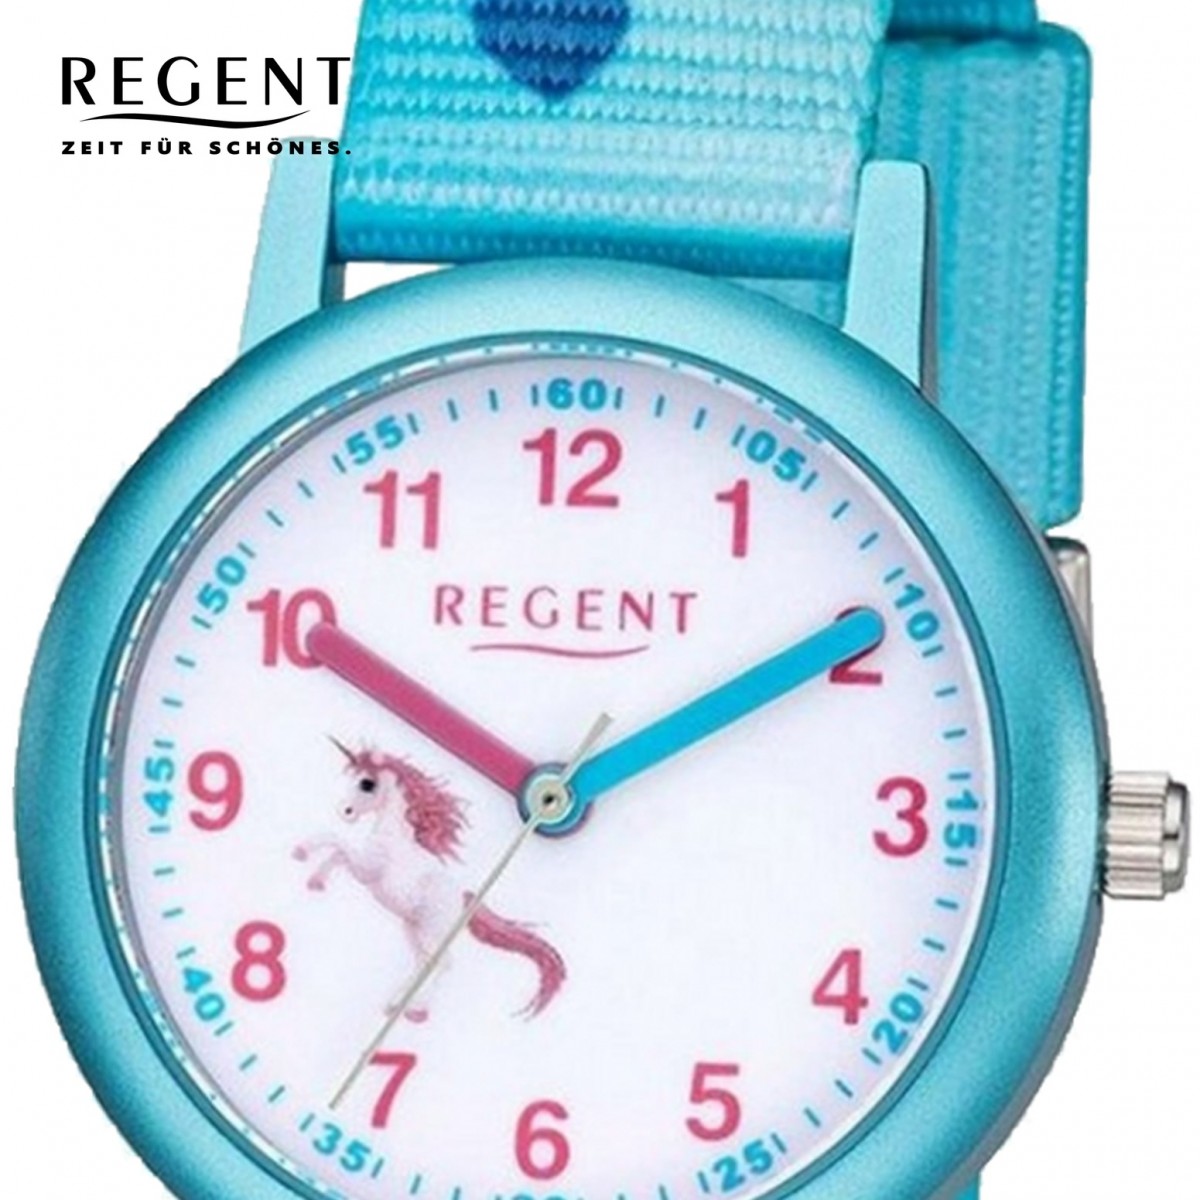 Regent Kinder Quarz-Uhr blau Analog URF1208 Armbanduhr F-1208 Textil